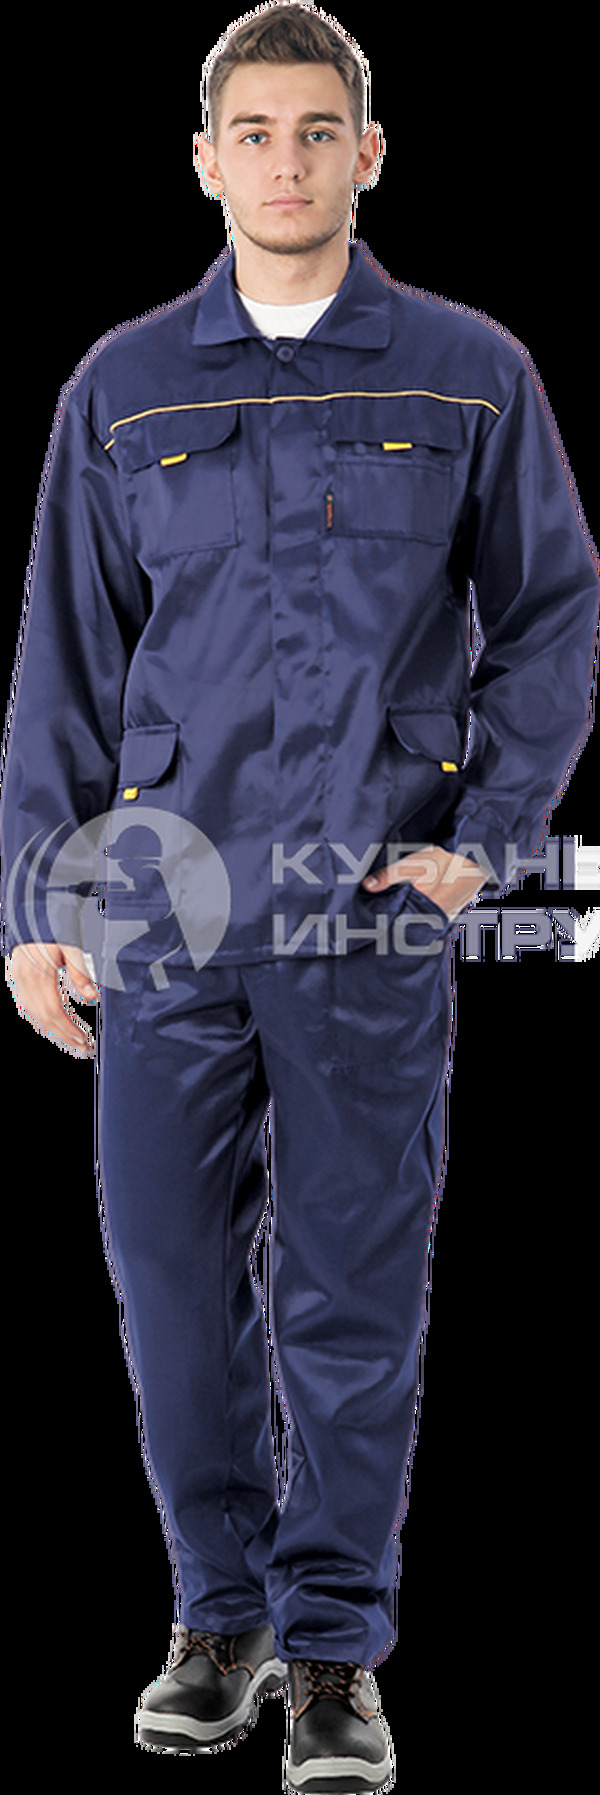 Костюм Вымпел-1, темно-синий  брюки+куртка   88-92, 182-188  Кос 523